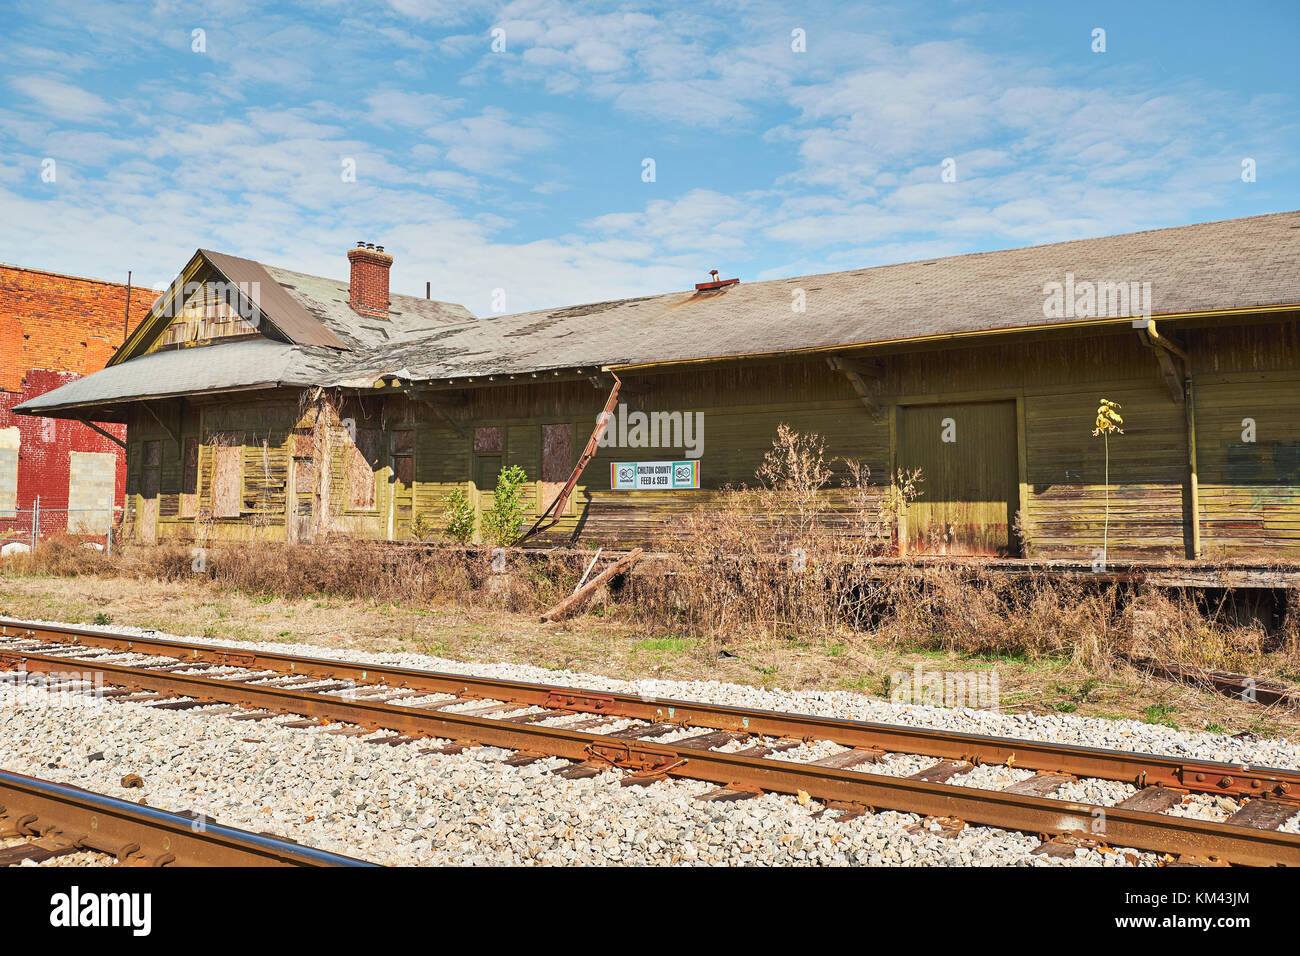 Antiguo almacén de mercancías de ferrocarril abandonados transformados en un almacén para el condado de chilton piensos y semillas en zonas rurales clanton Alabama, Estados Unidos. Foto de stock